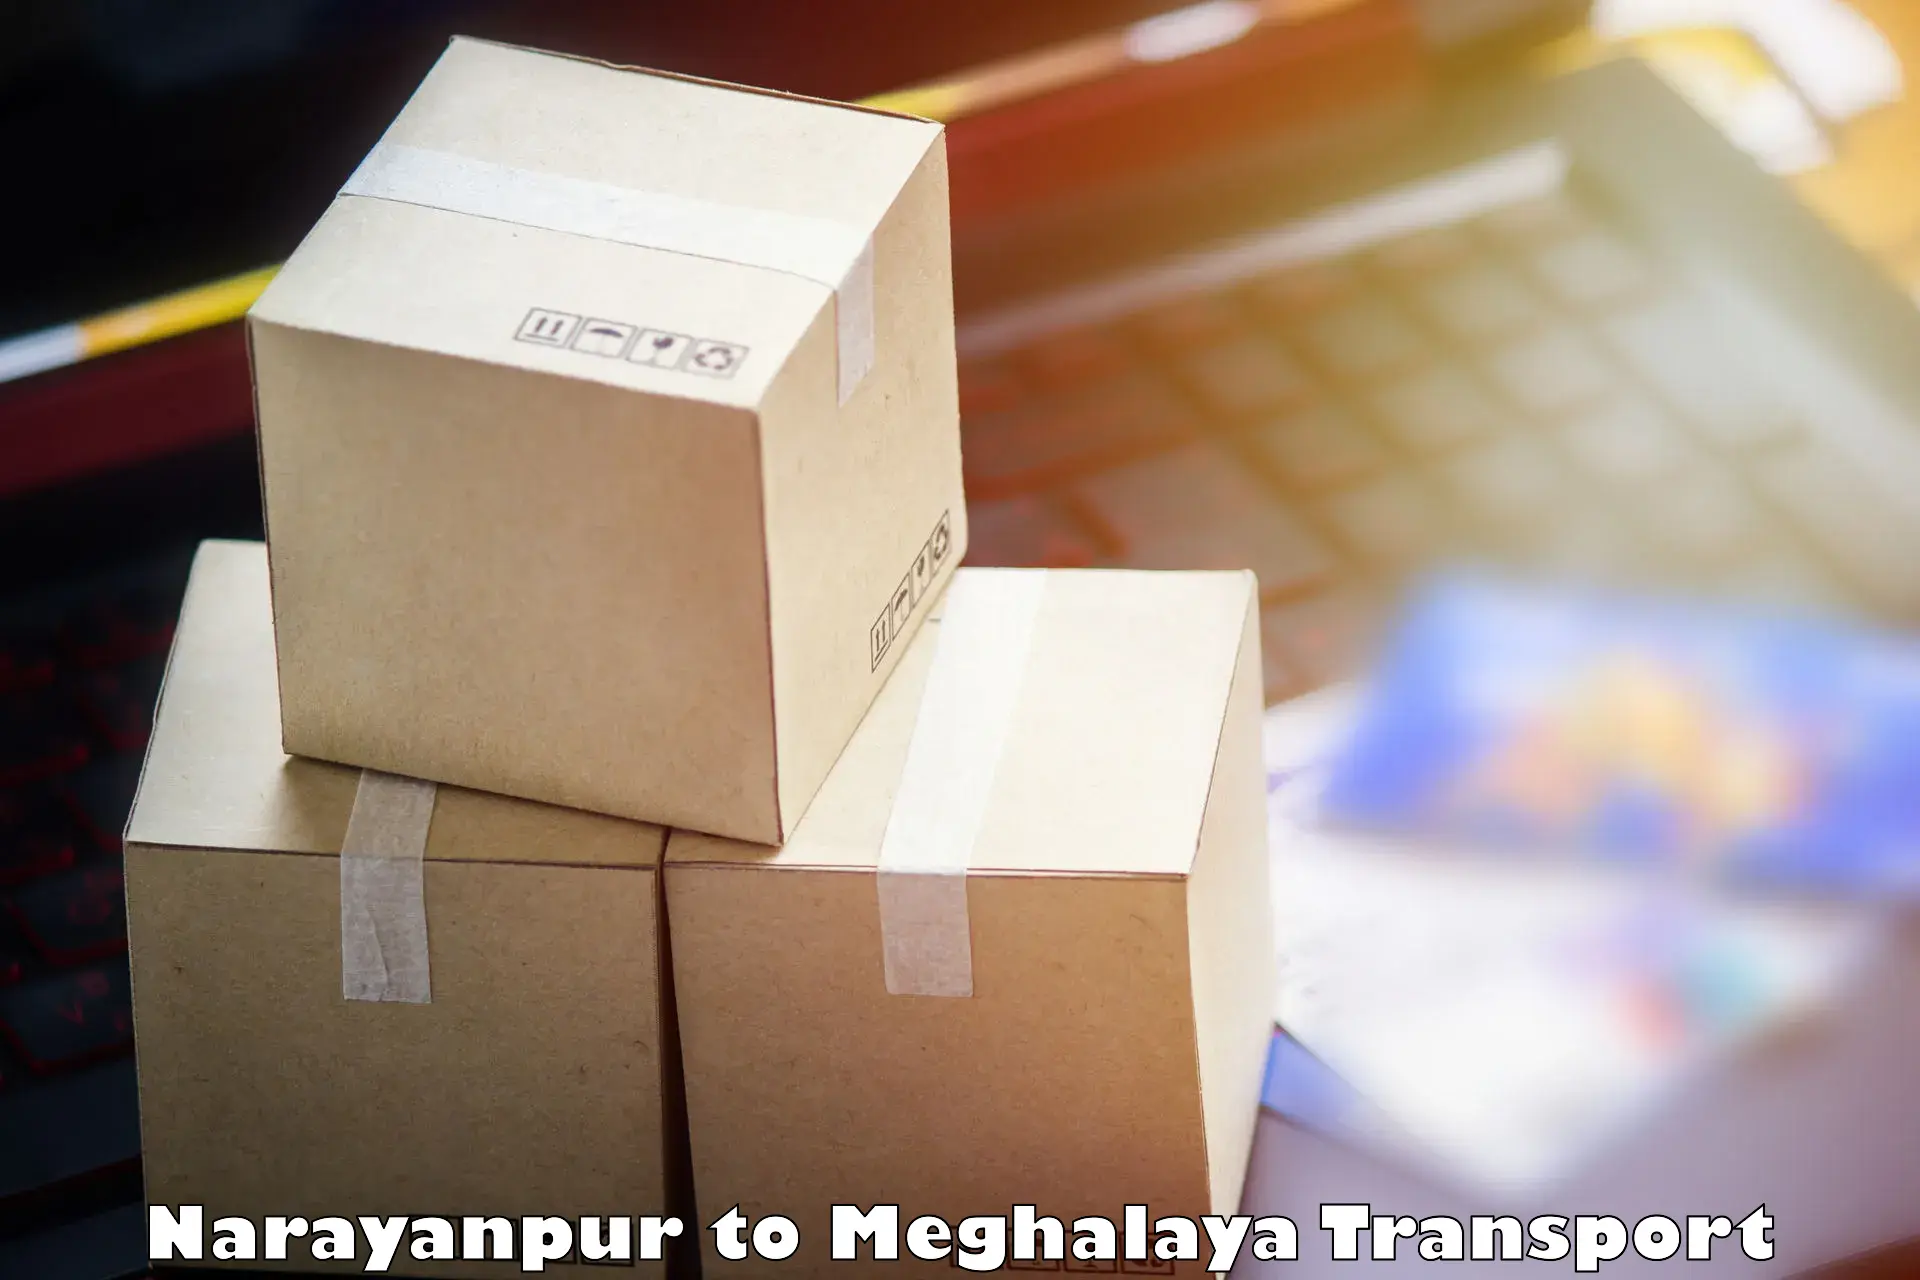 Air cargo transport services Narayanpur to Cherrapunji